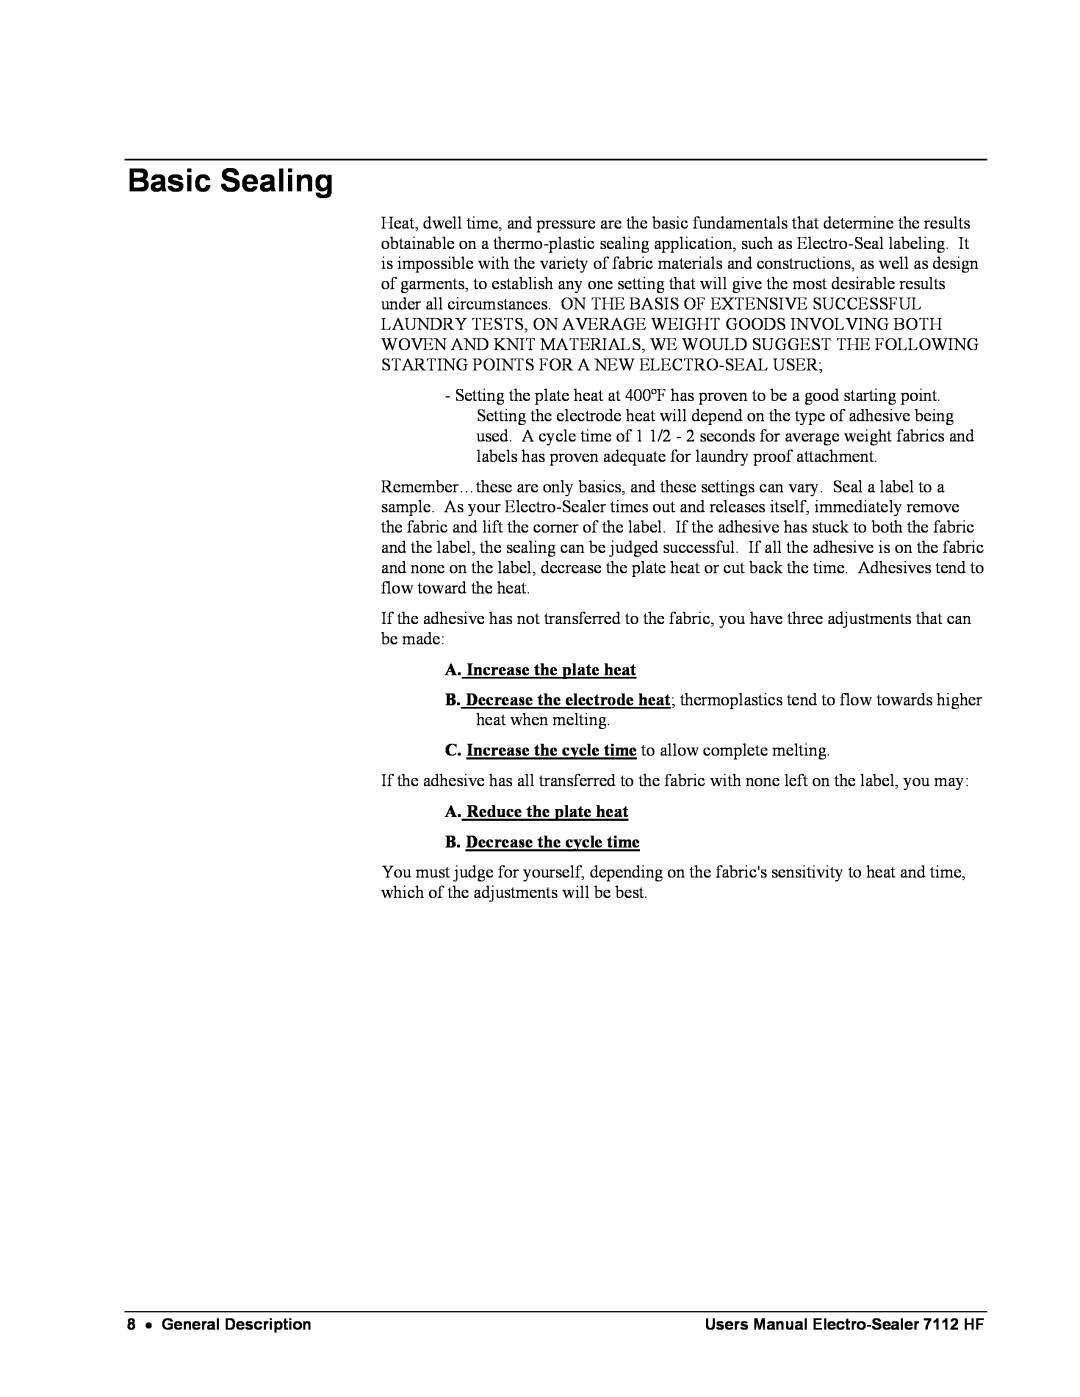 Avery 7112 HF user manual Basic Sealing 